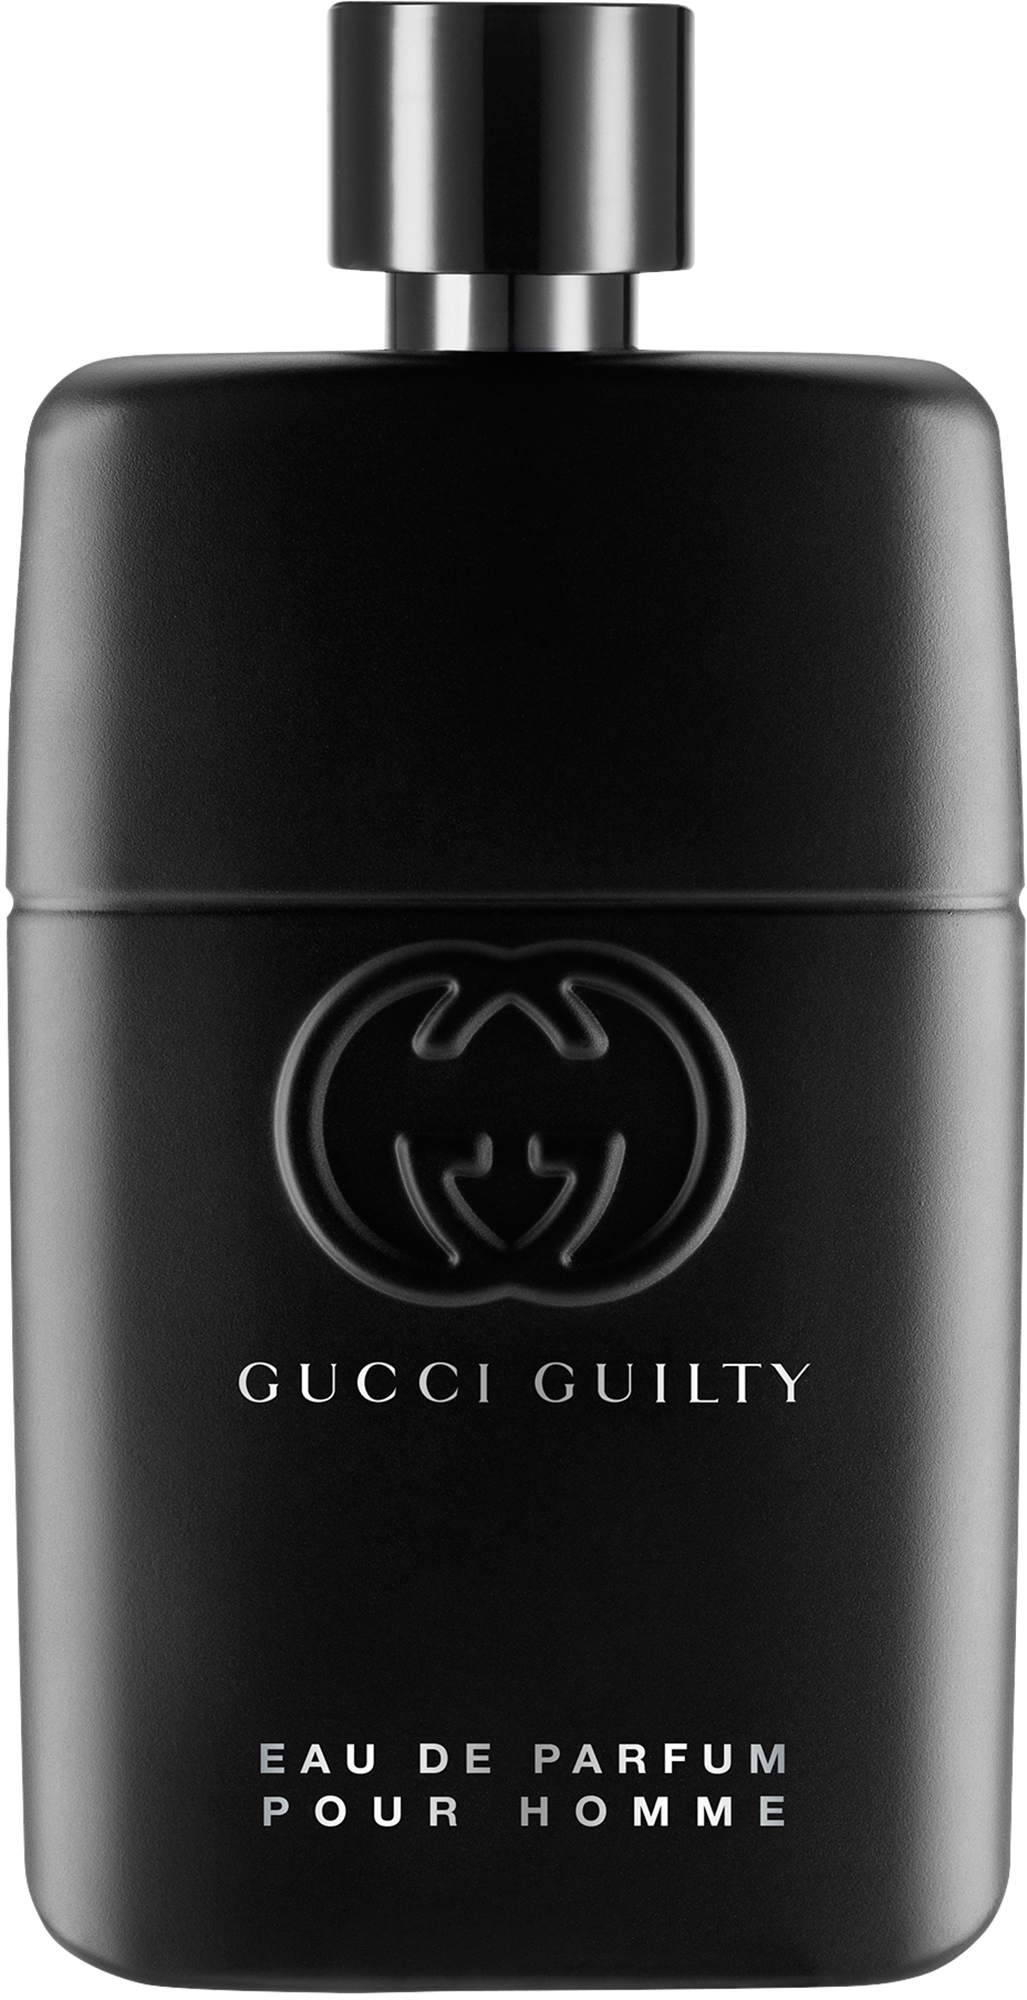 Gucci Guilty Pour Homme Parfum De ml 50 Eau